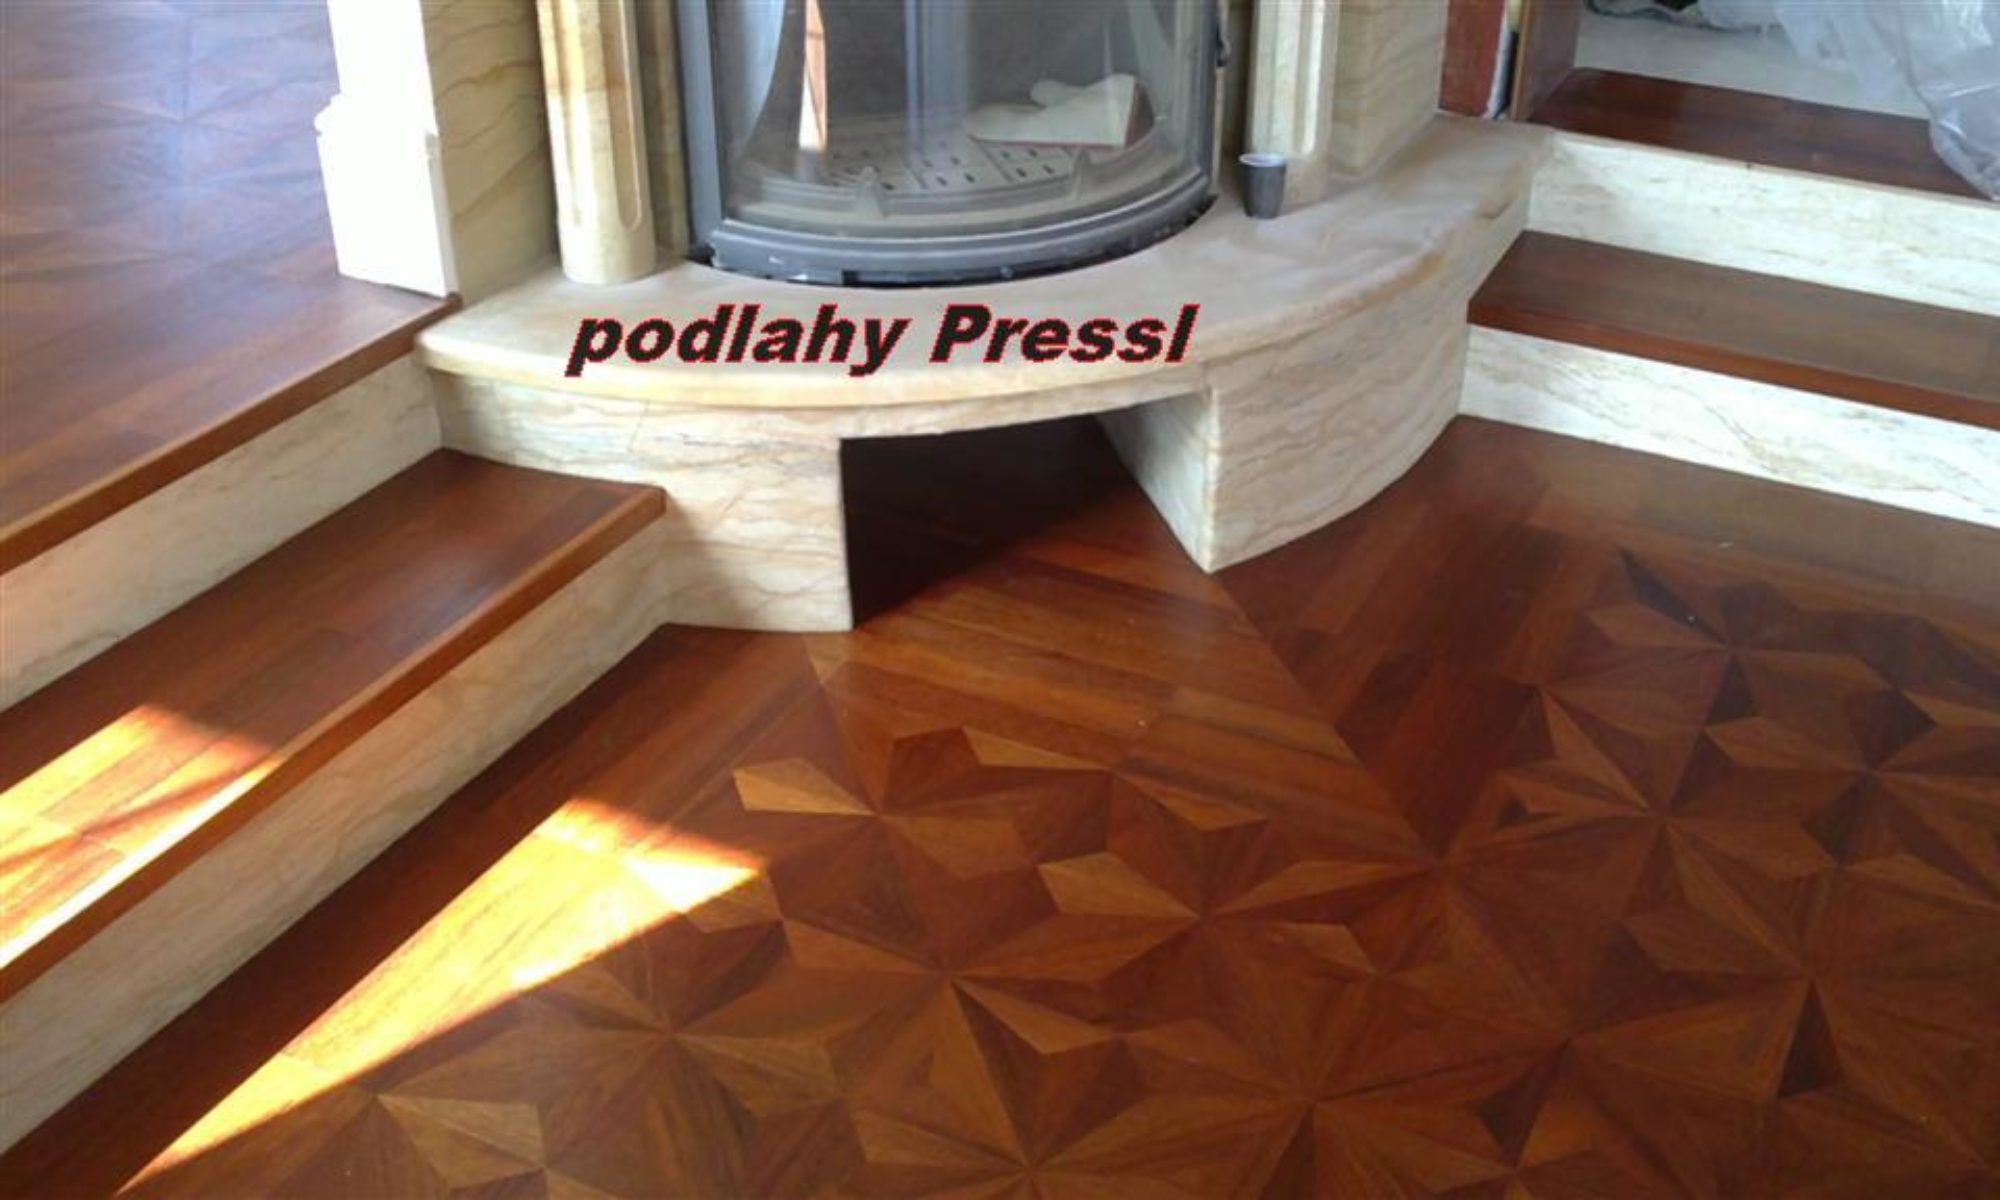 Podlahy Pressl - Plzeň - pokládka podlah v Plzni